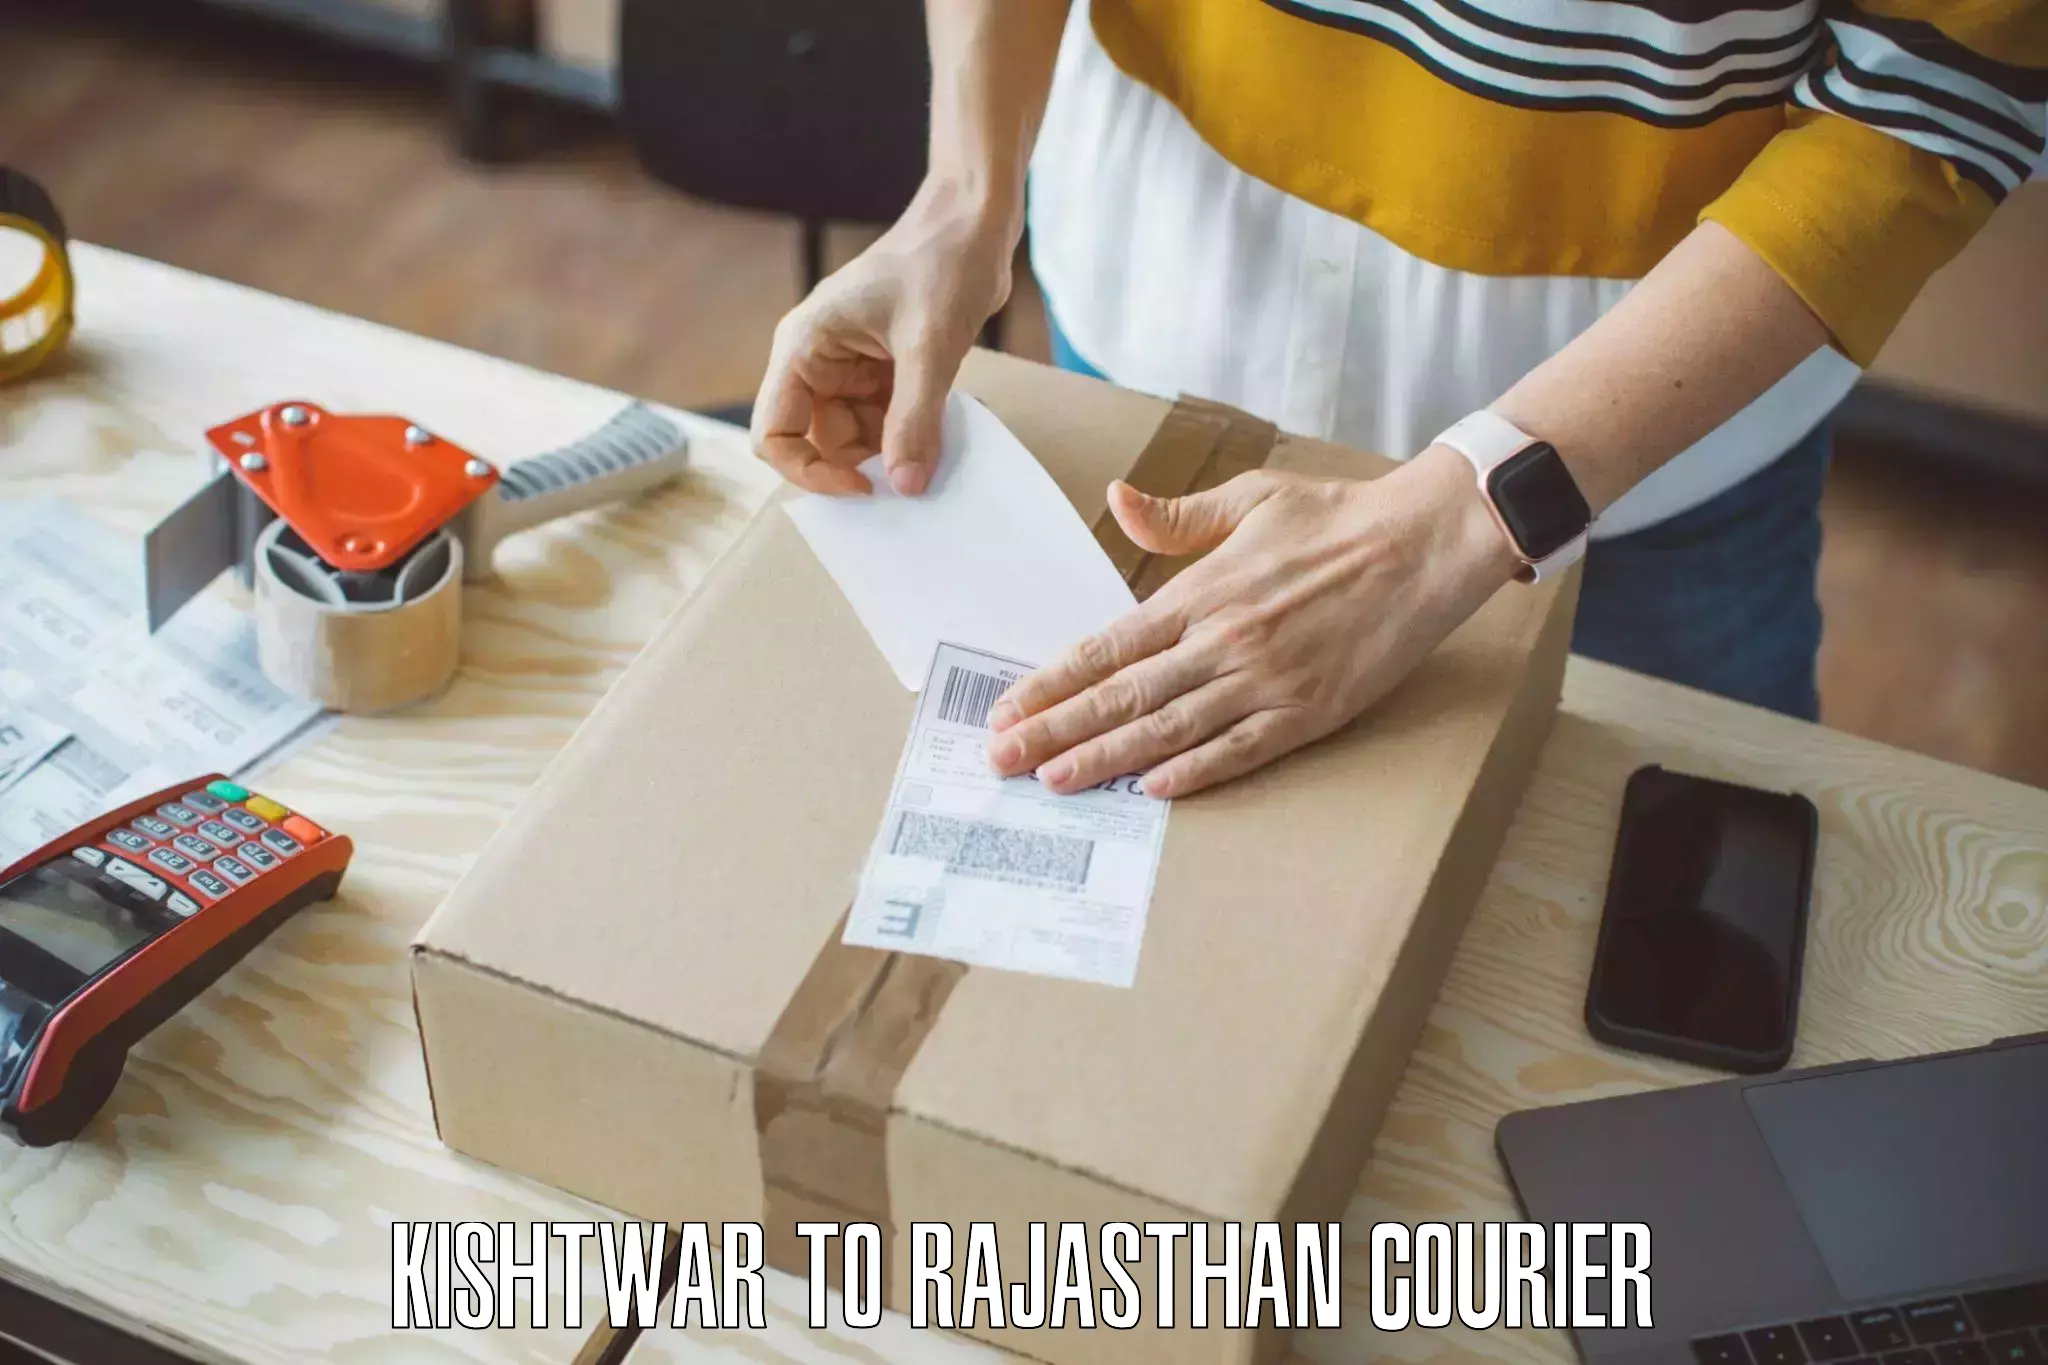 Furniture moving experts Kishtwar to Rajasthan